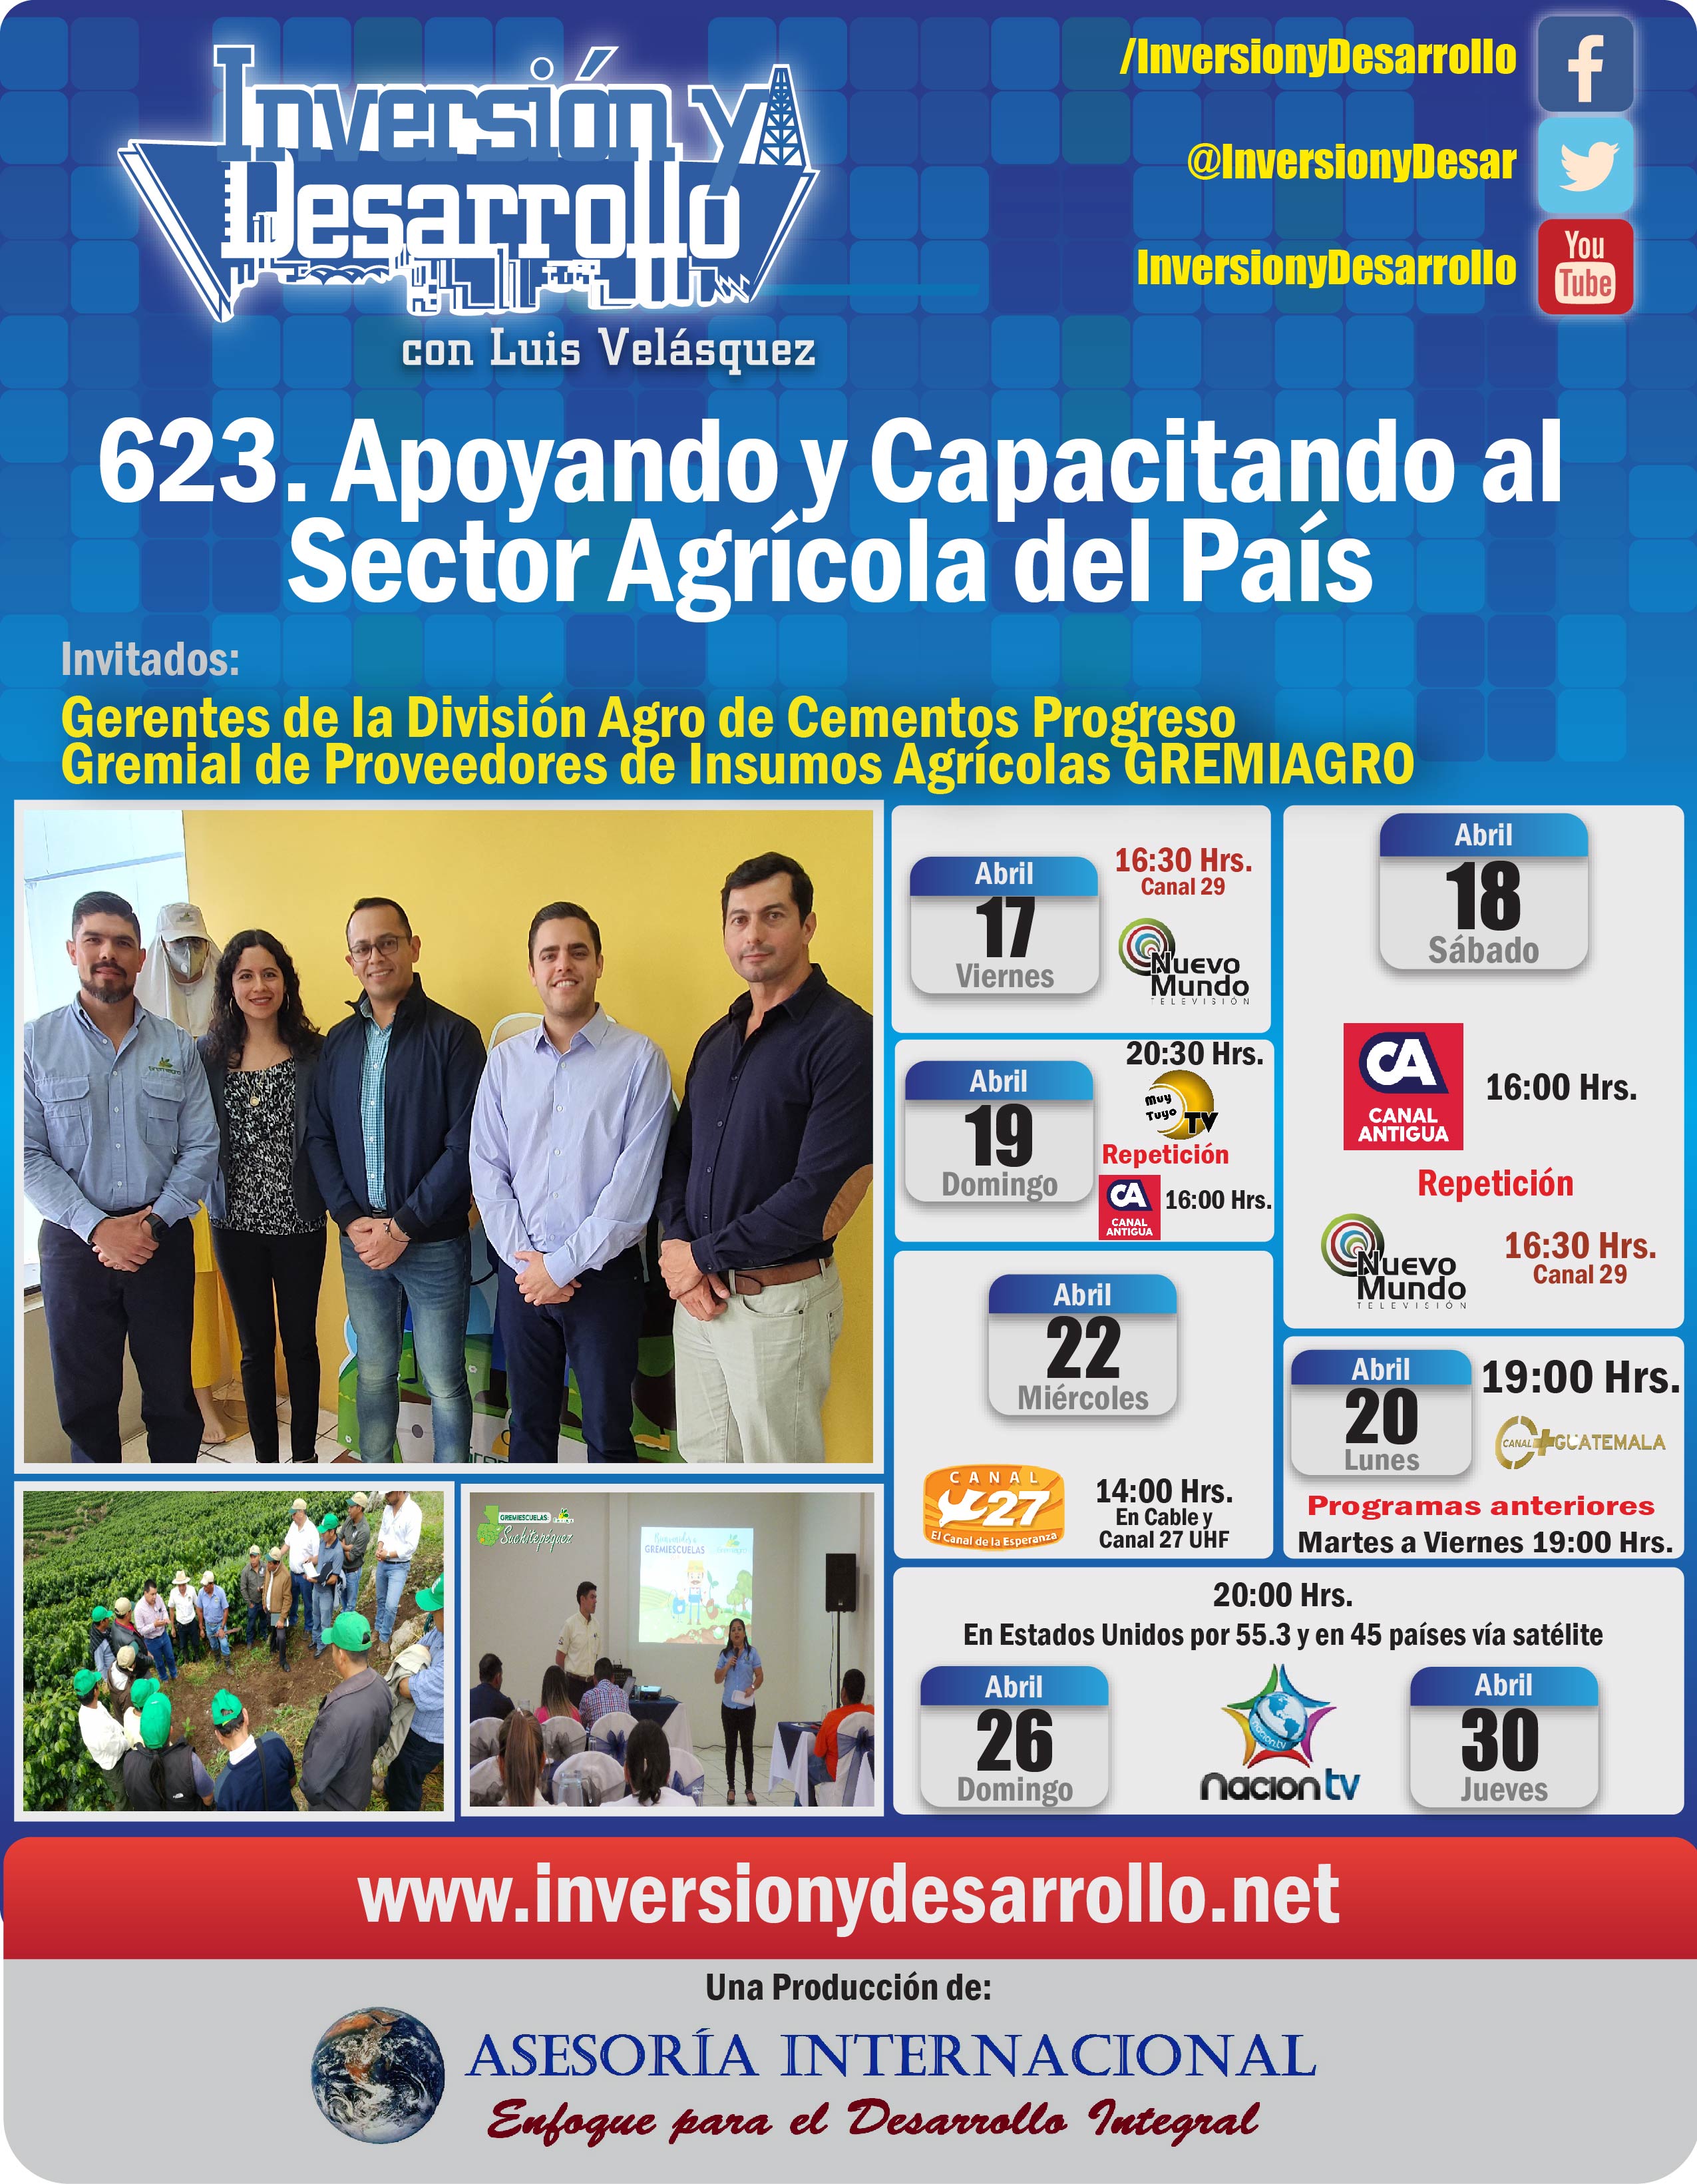 623. Apoyando y Capacitando al Sector Agrícola del País